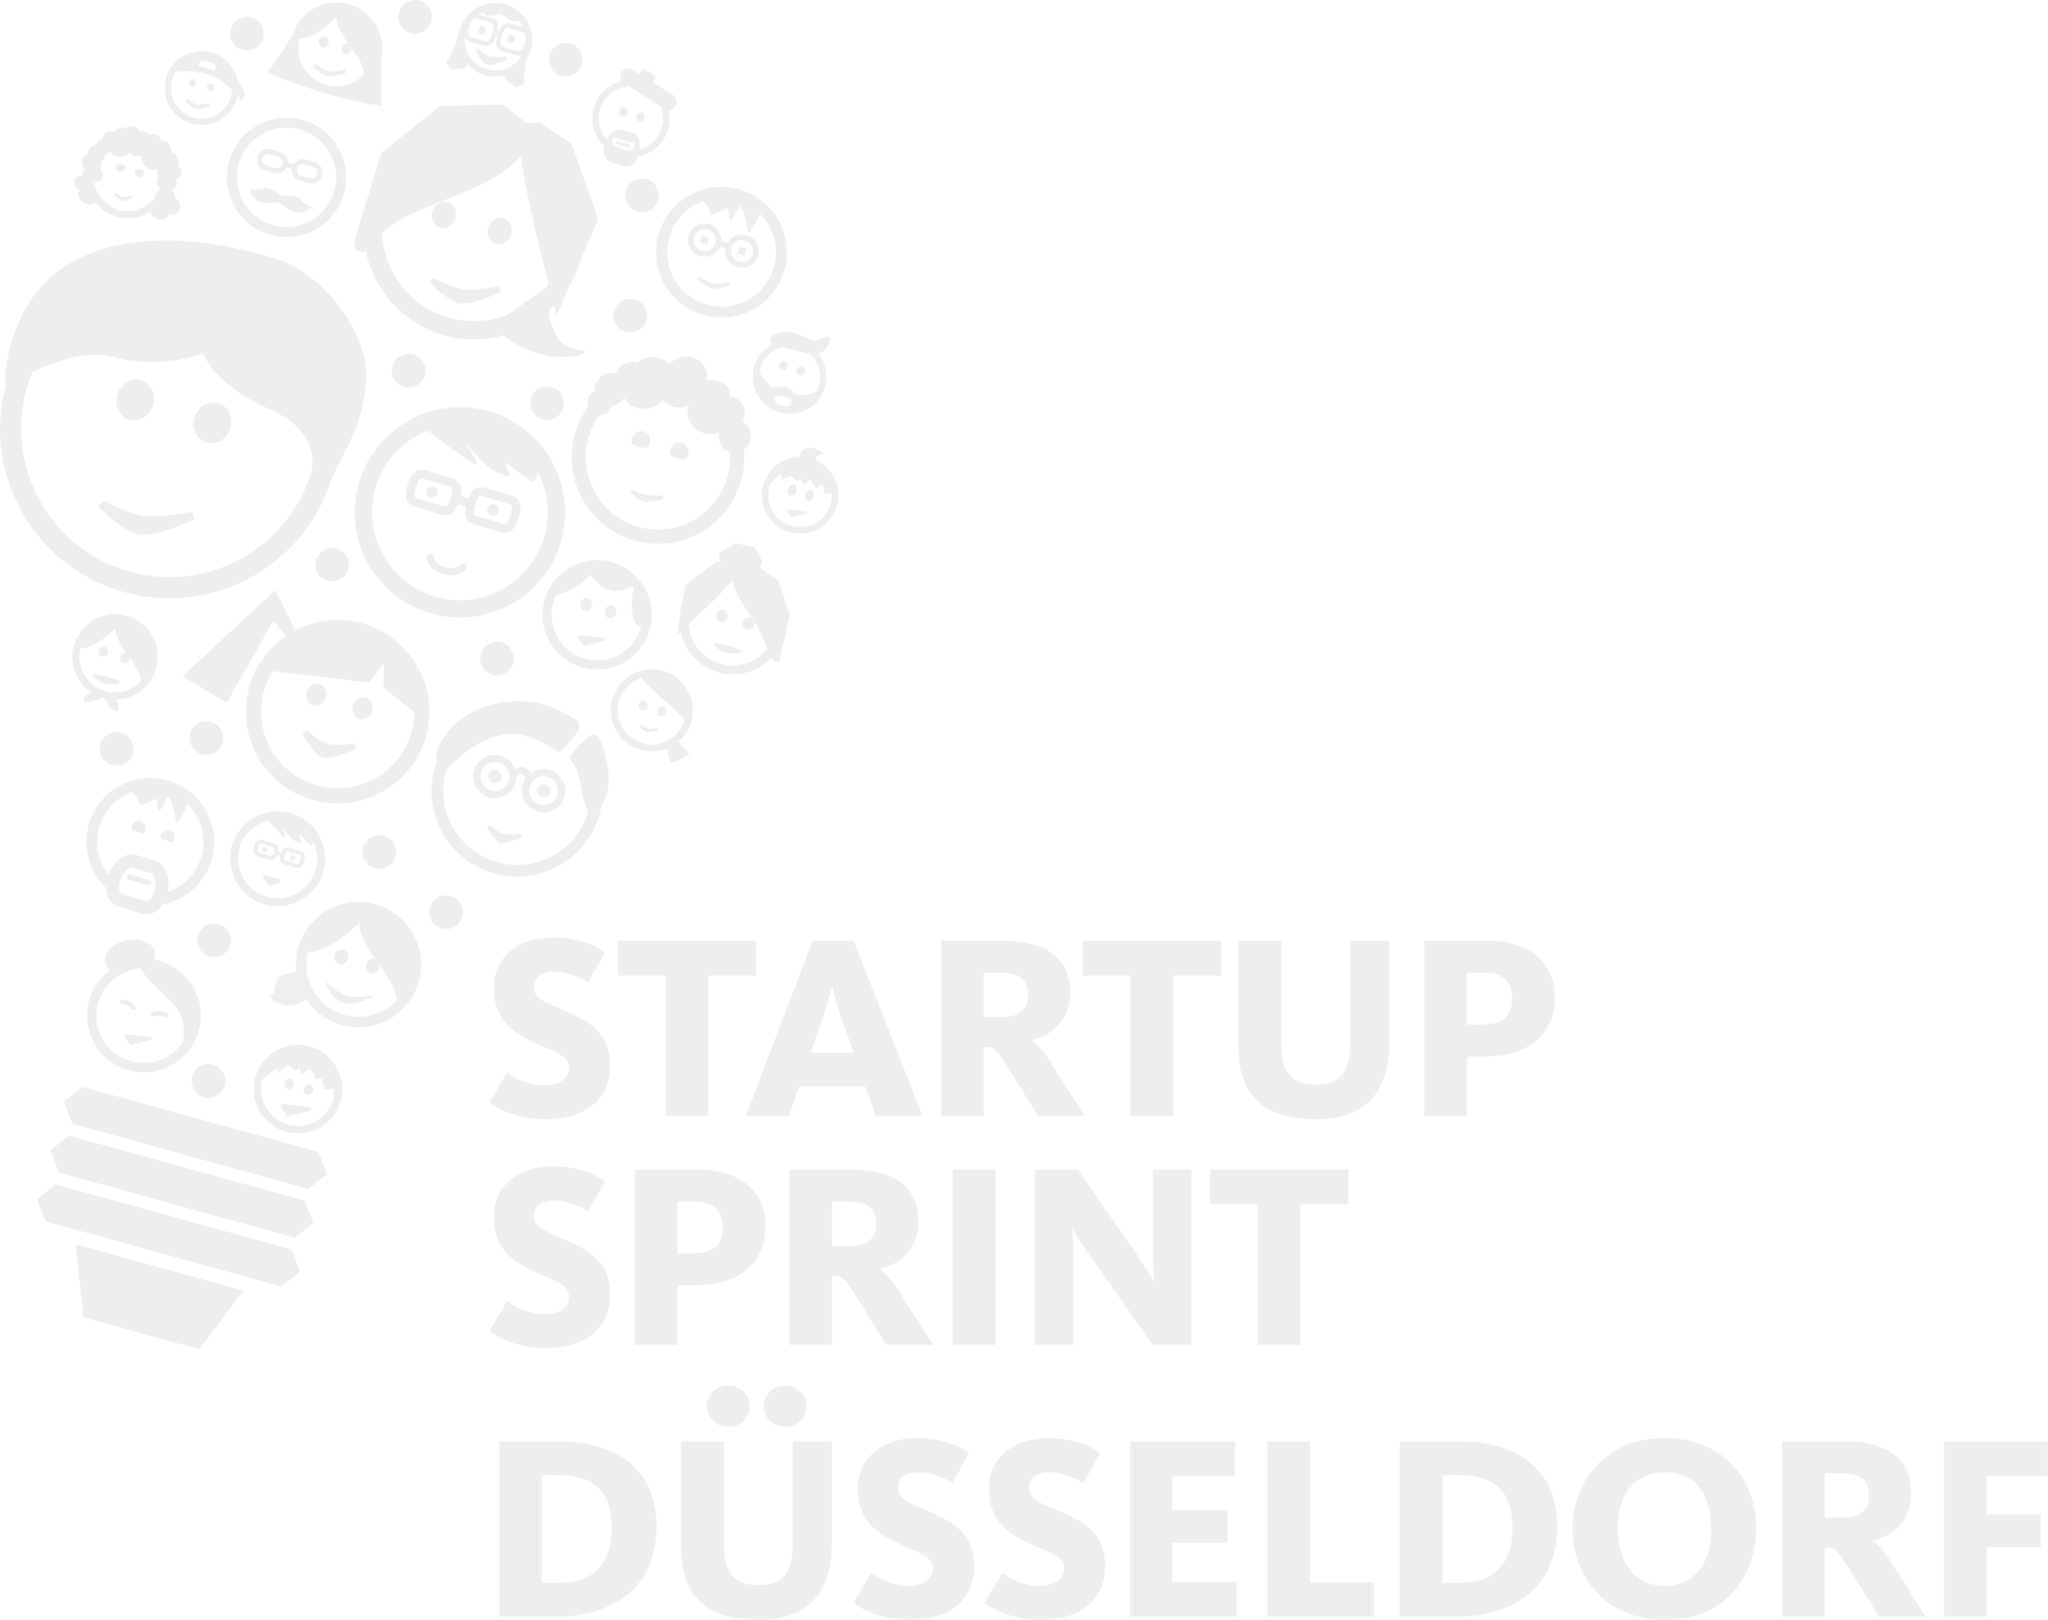 Startup Sprint Dusseldorf